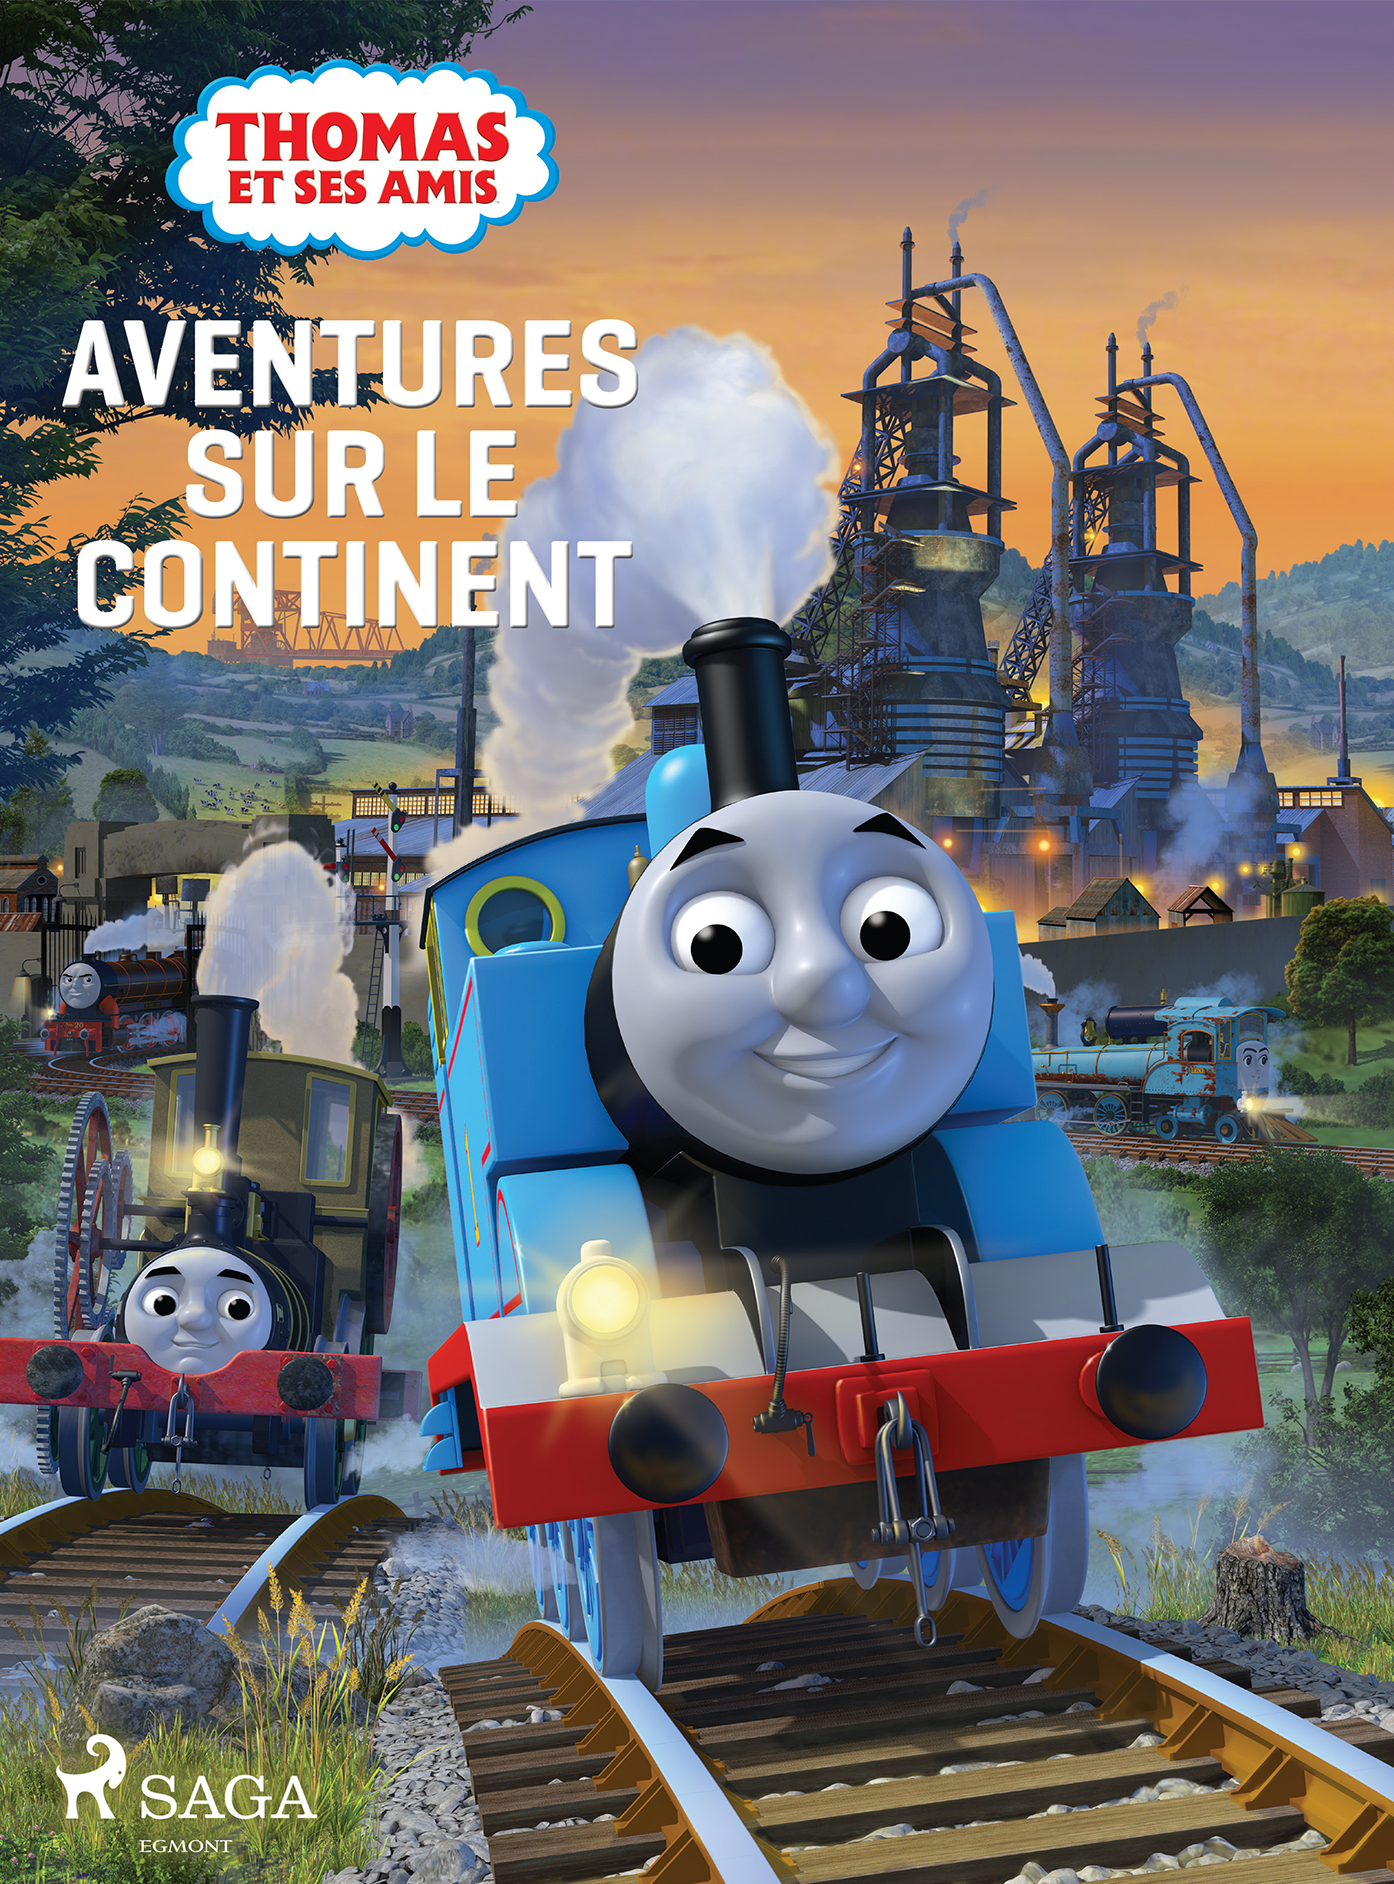 Thomas & ses amis - Aventure sur le continent